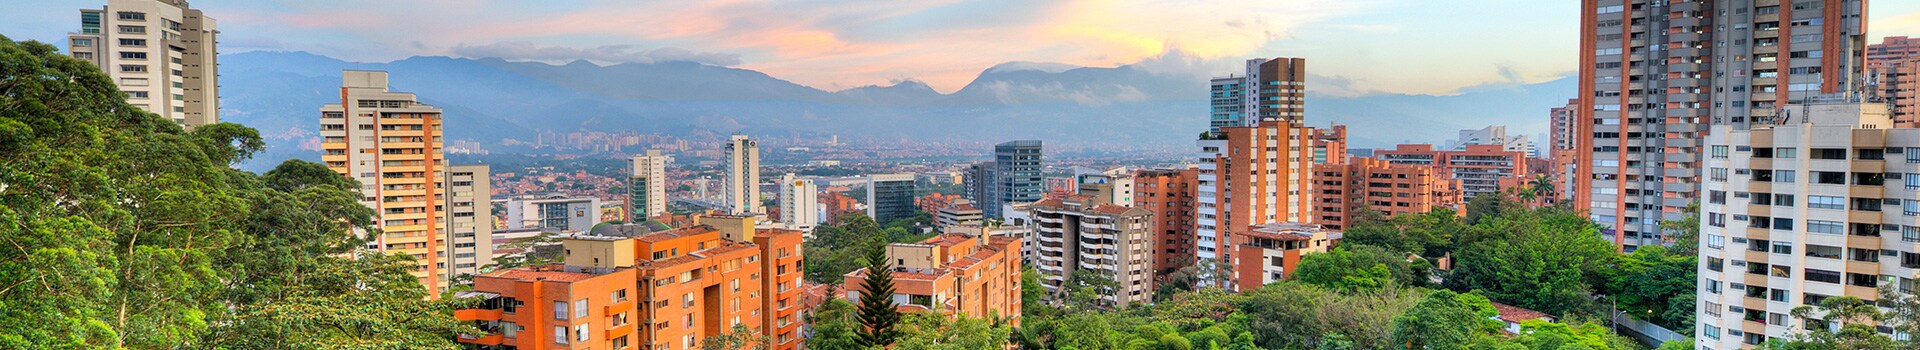 Valencia - Medellín - jose marie cordova